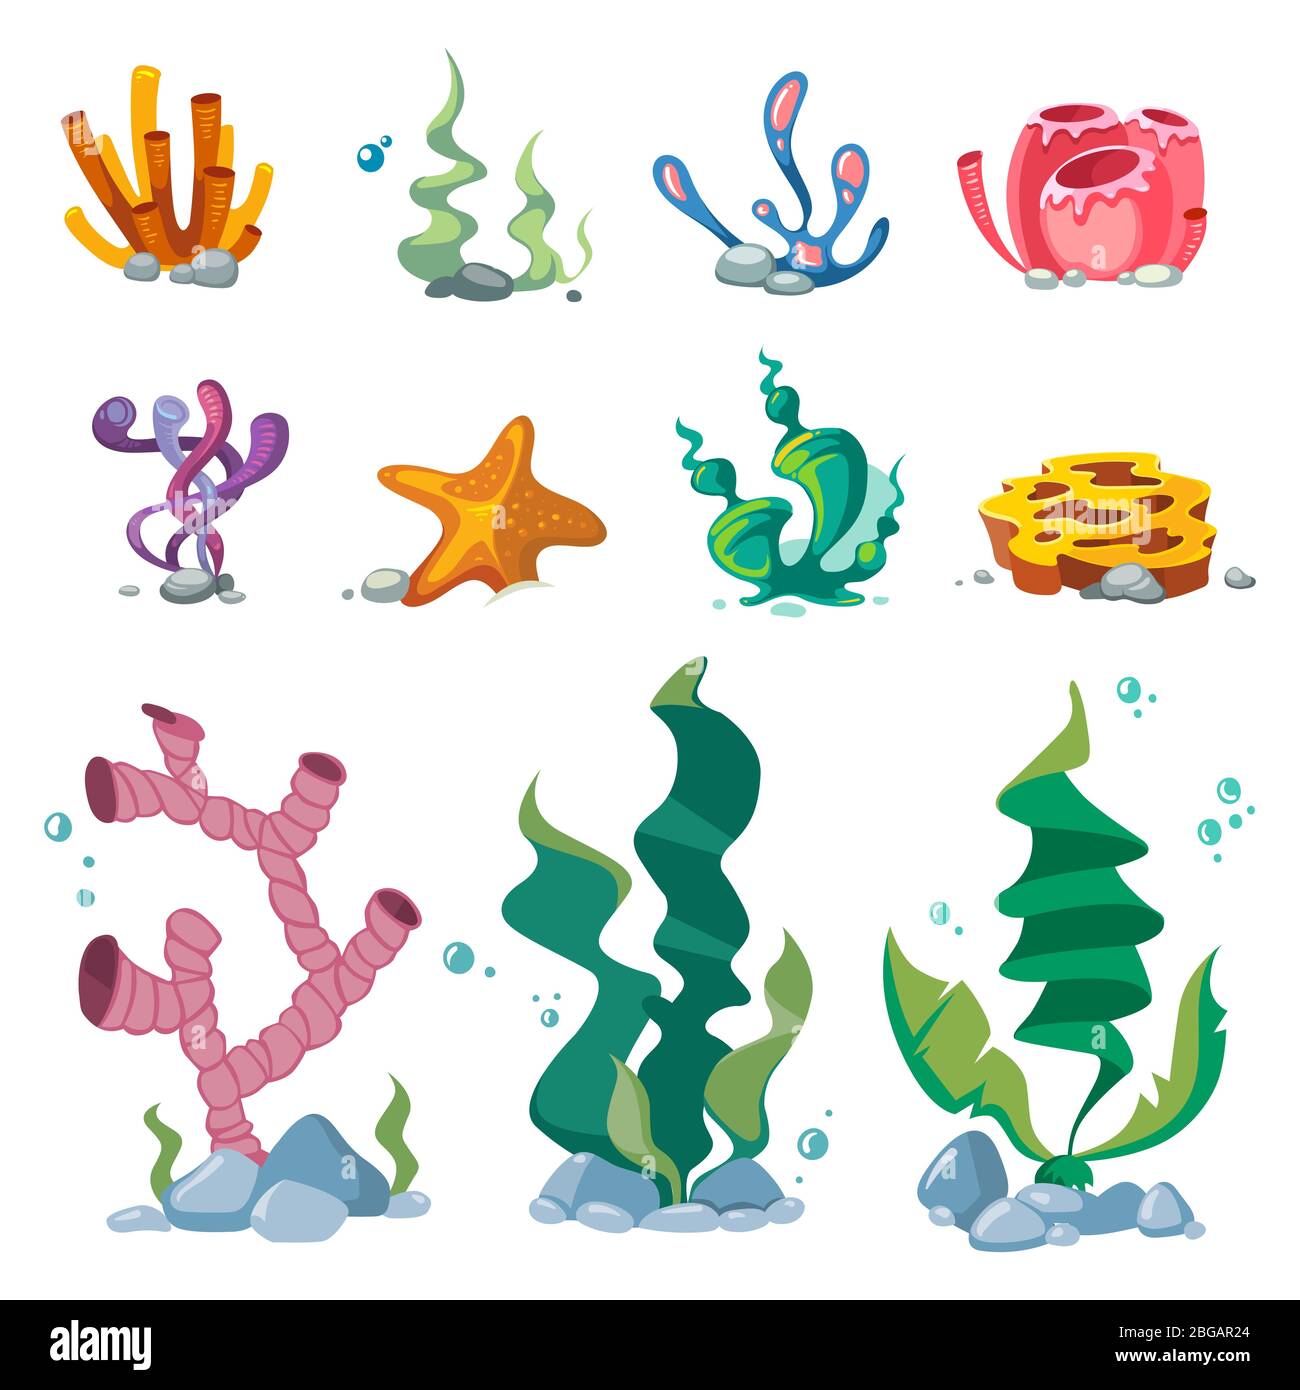 Alghe luminose acquario decorazione cartoon vettore set isolato su sfondo bianco. Alghe per acquario, illustrazione della flora acquatica subacquea Illustrazione Vettoriale